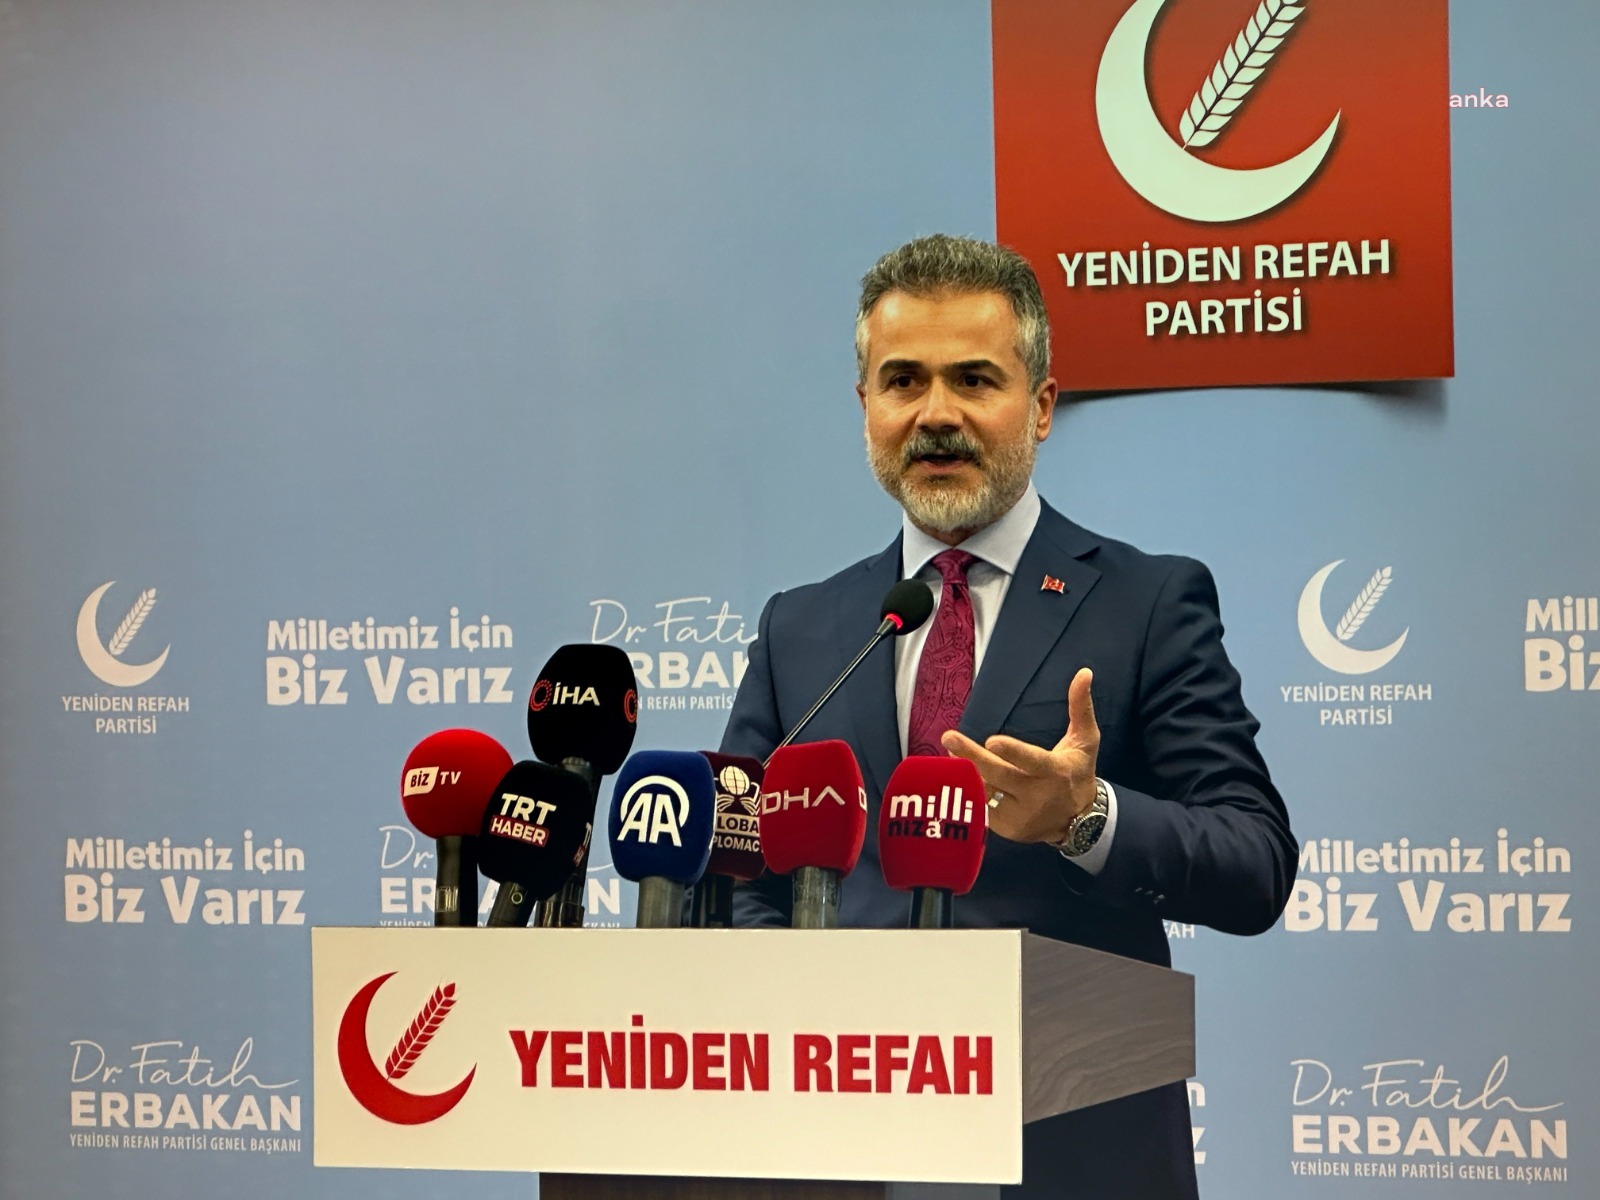 YRP’den ittifak açıklaması: AK Parti’den teklif gelirse olumlu bakacağız